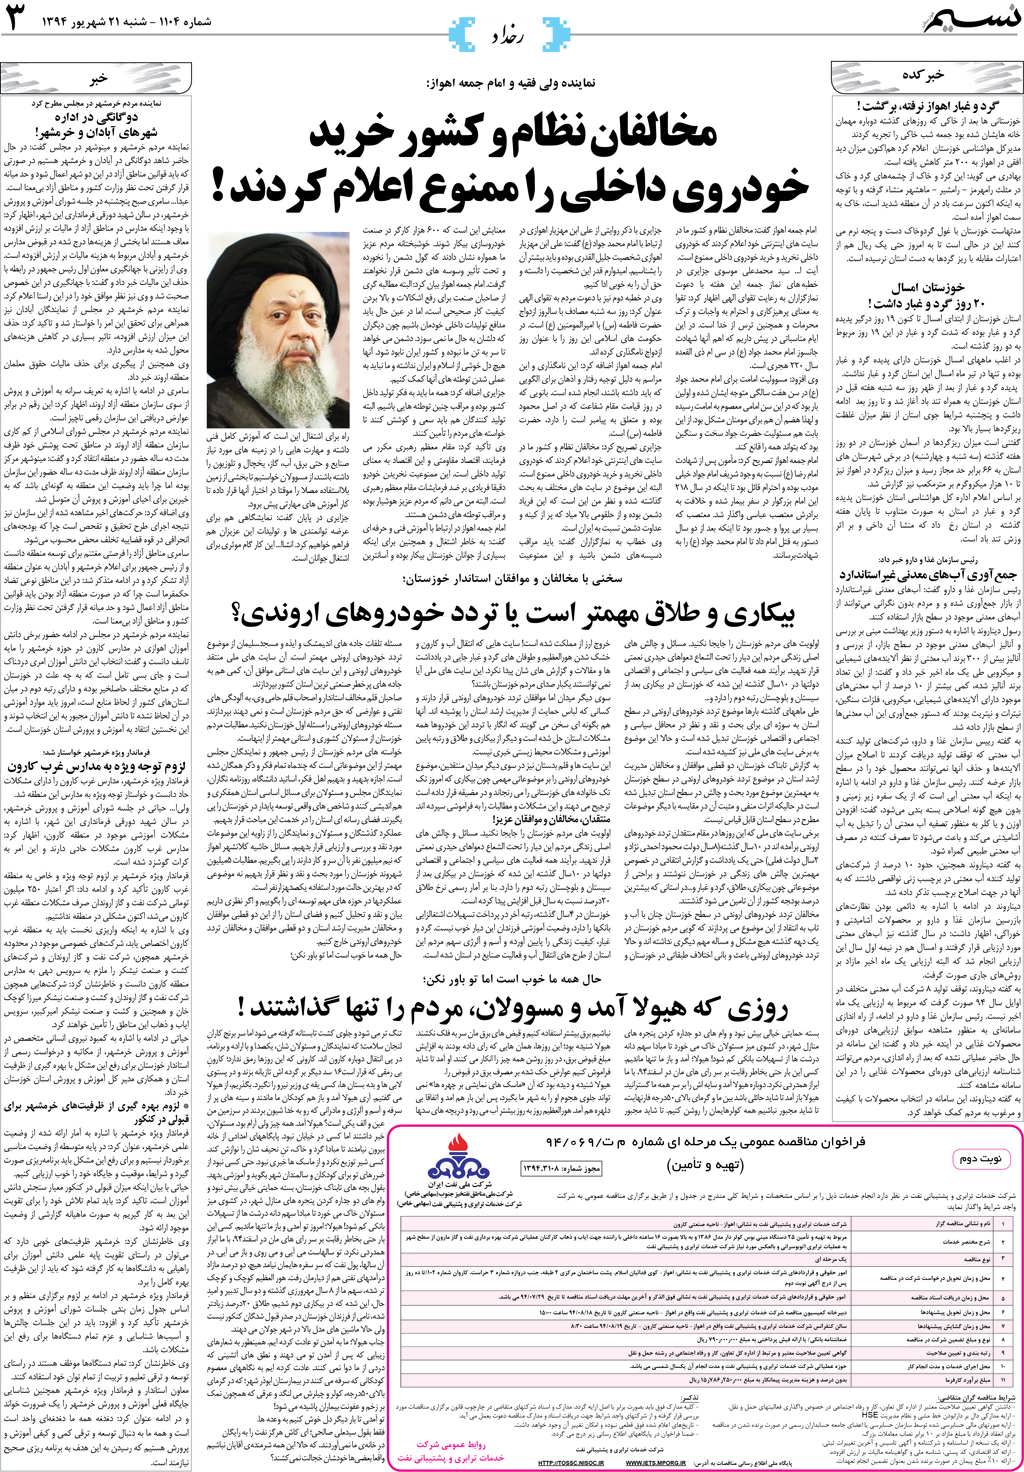 صفحه رخداد روزنامه نسیم شماره 1104